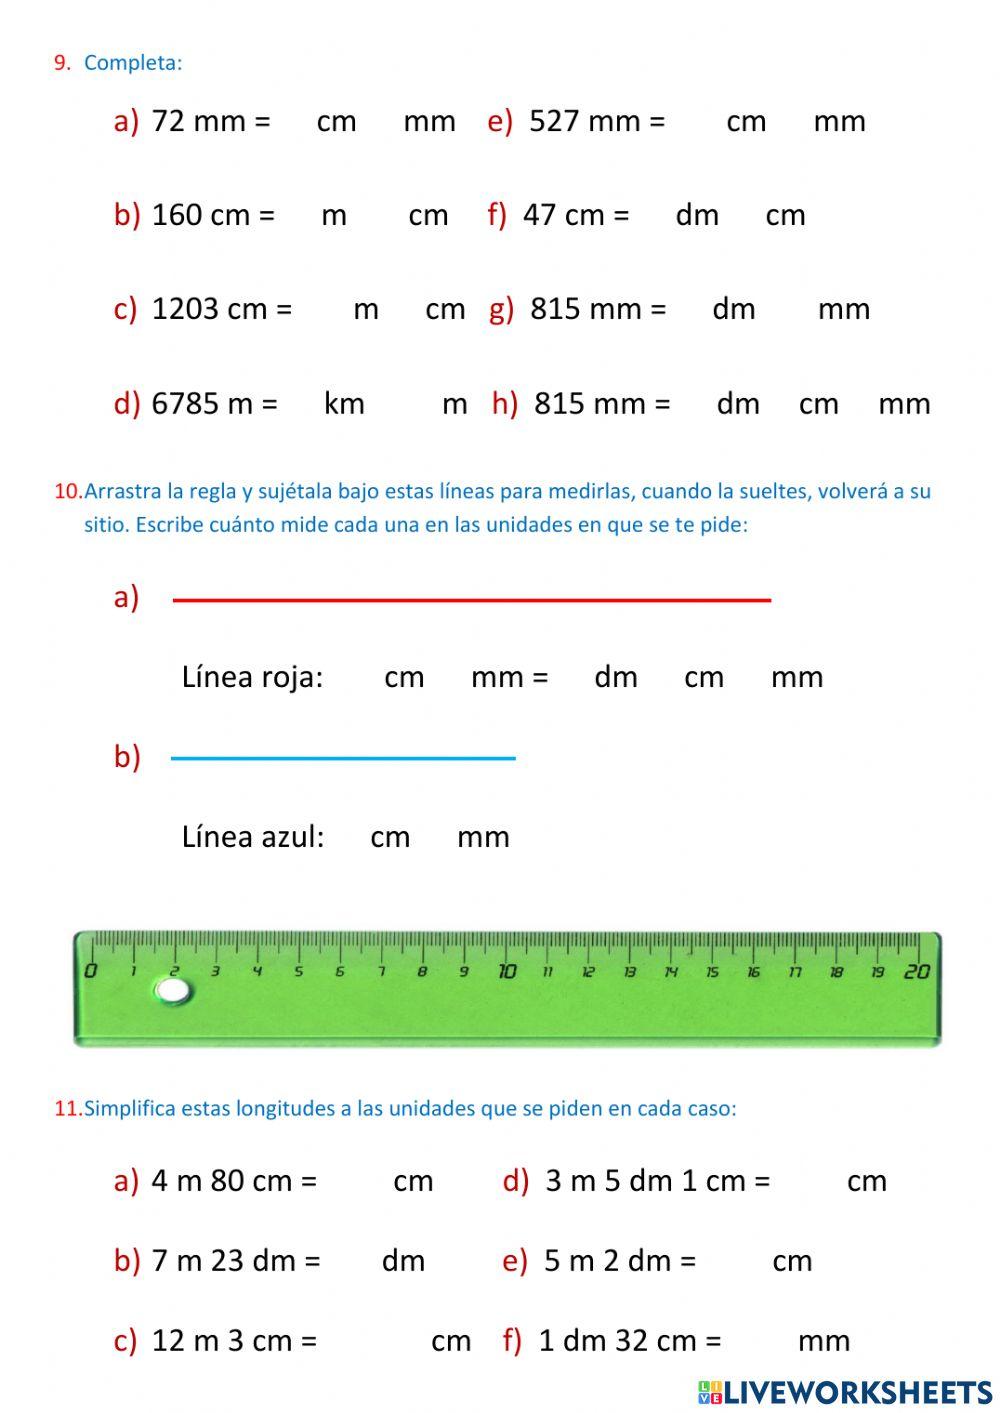 La medida de la longitud 1